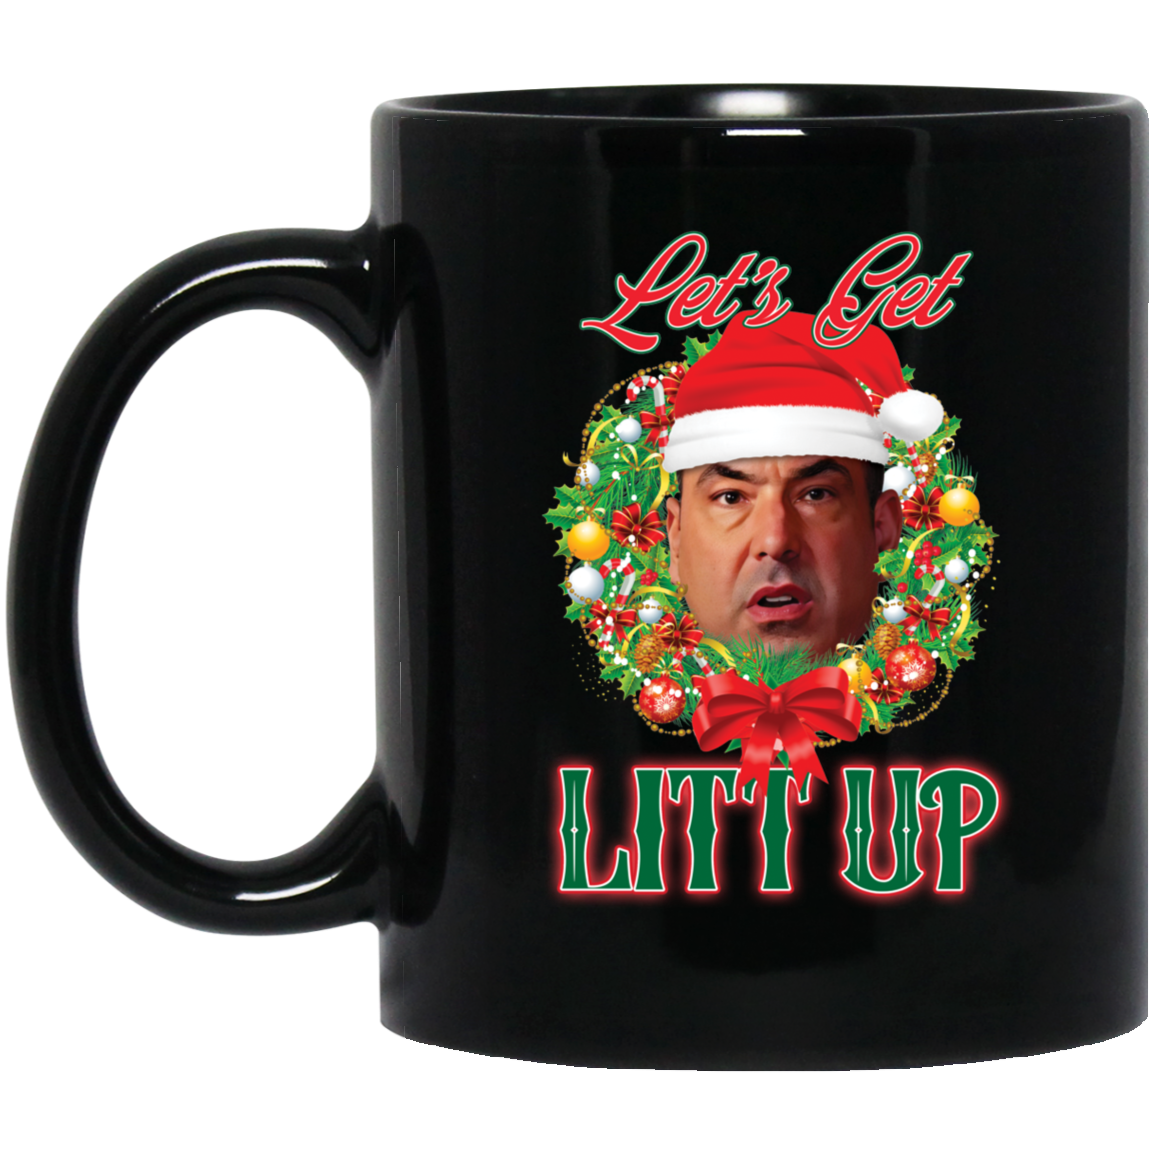 Santa Louis Litt Let's Get Litt Up Christmas Mug